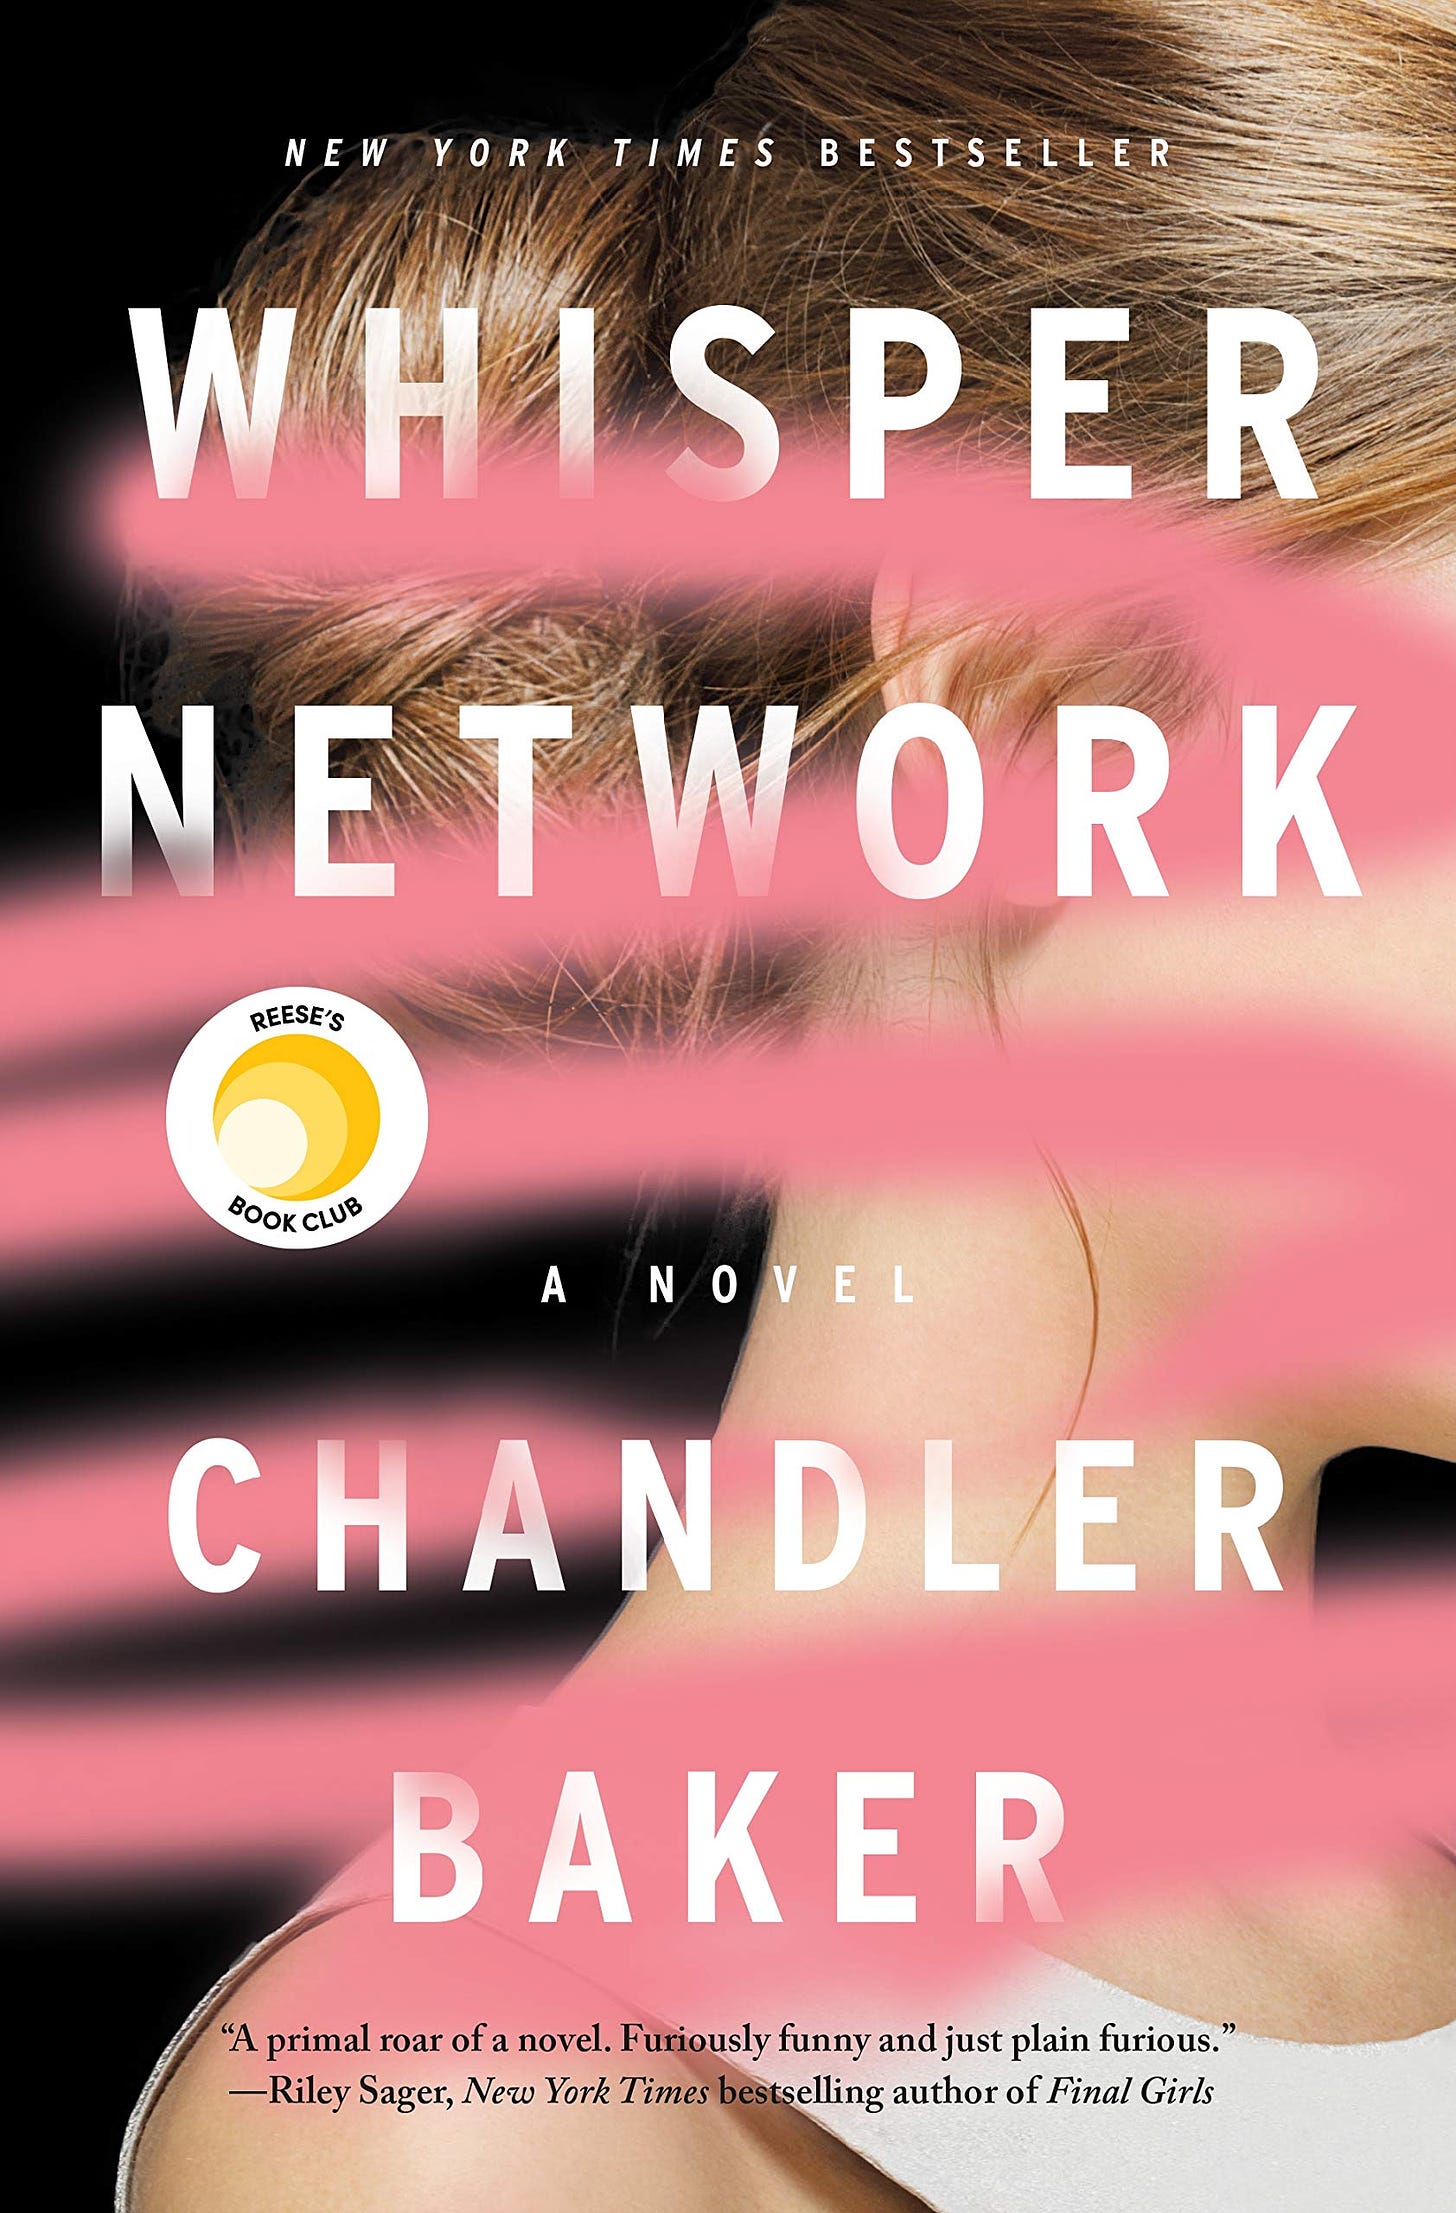 Amazon.com: Whisper Network: A Novel: 9781250319470: Baker, Chandler: Books